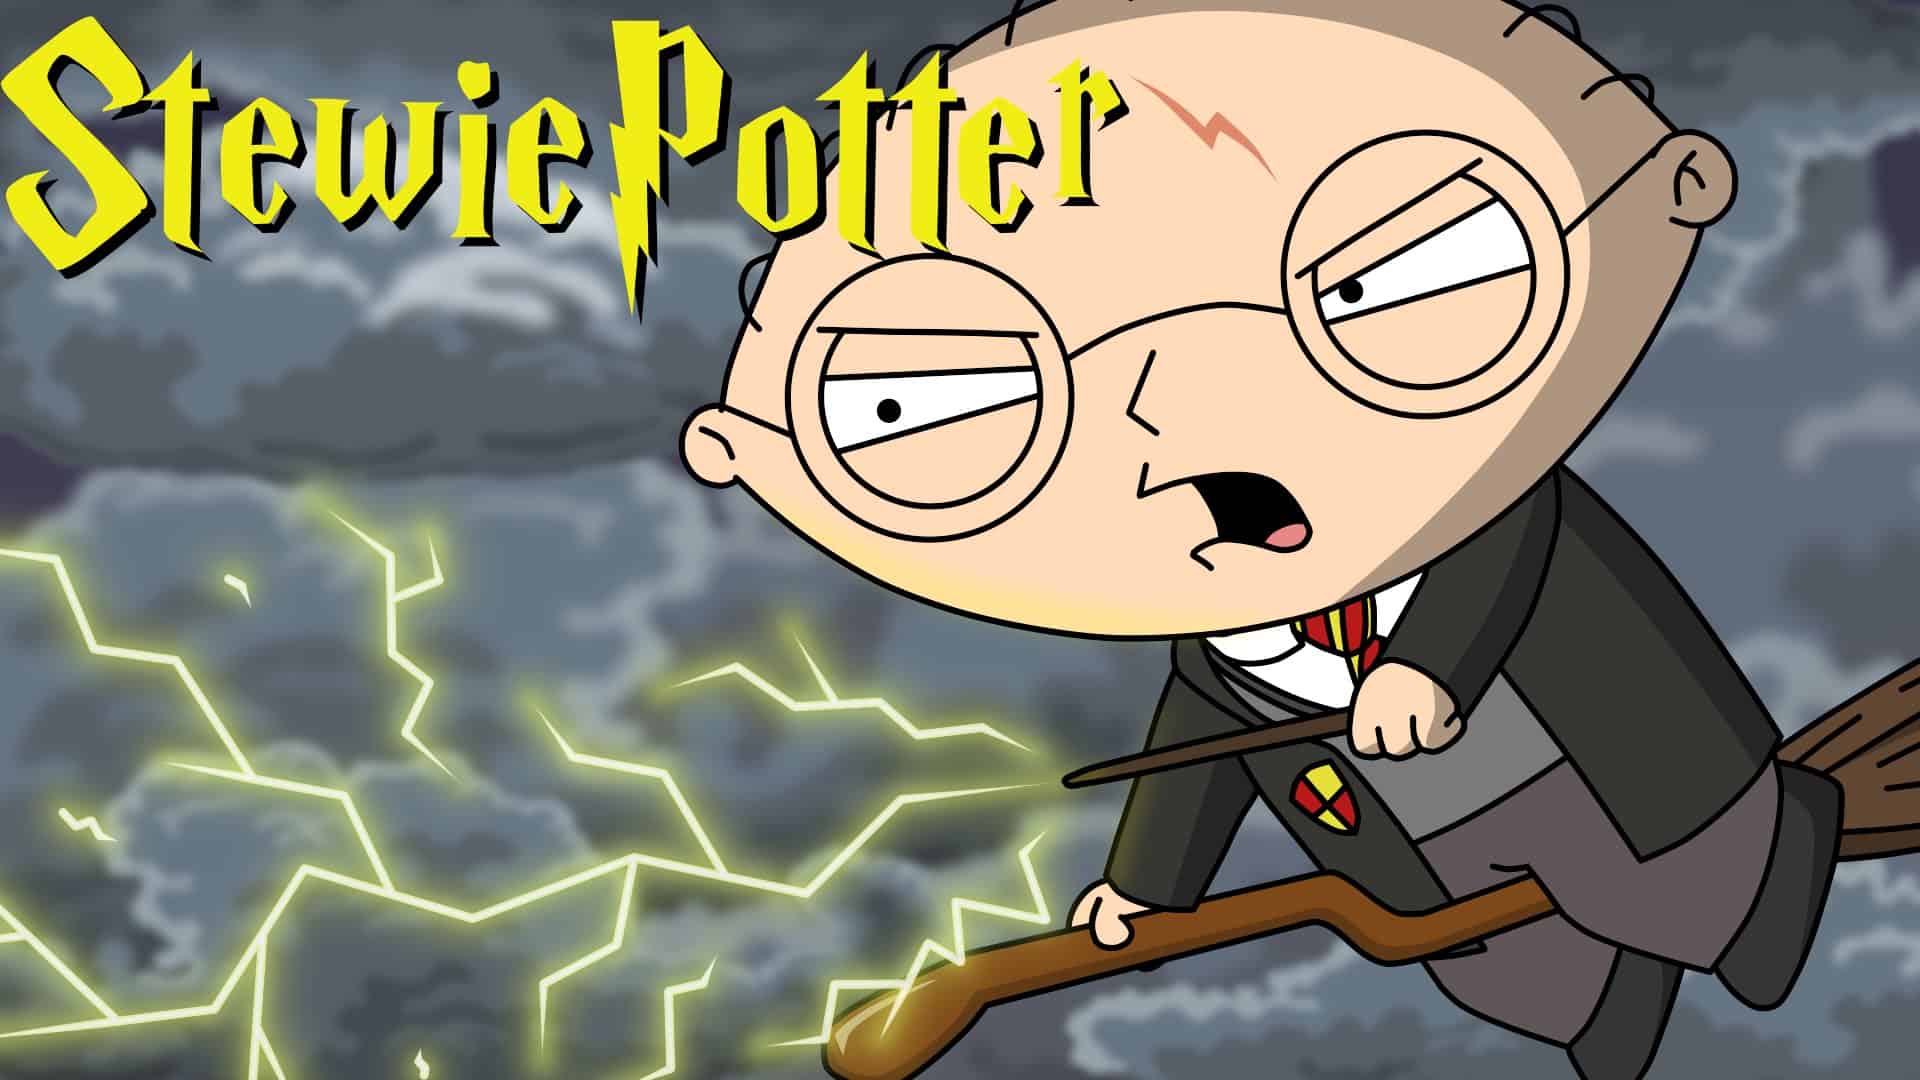 Stewie Potter: A Family Guy Παρωδία Χάρι Πότερ